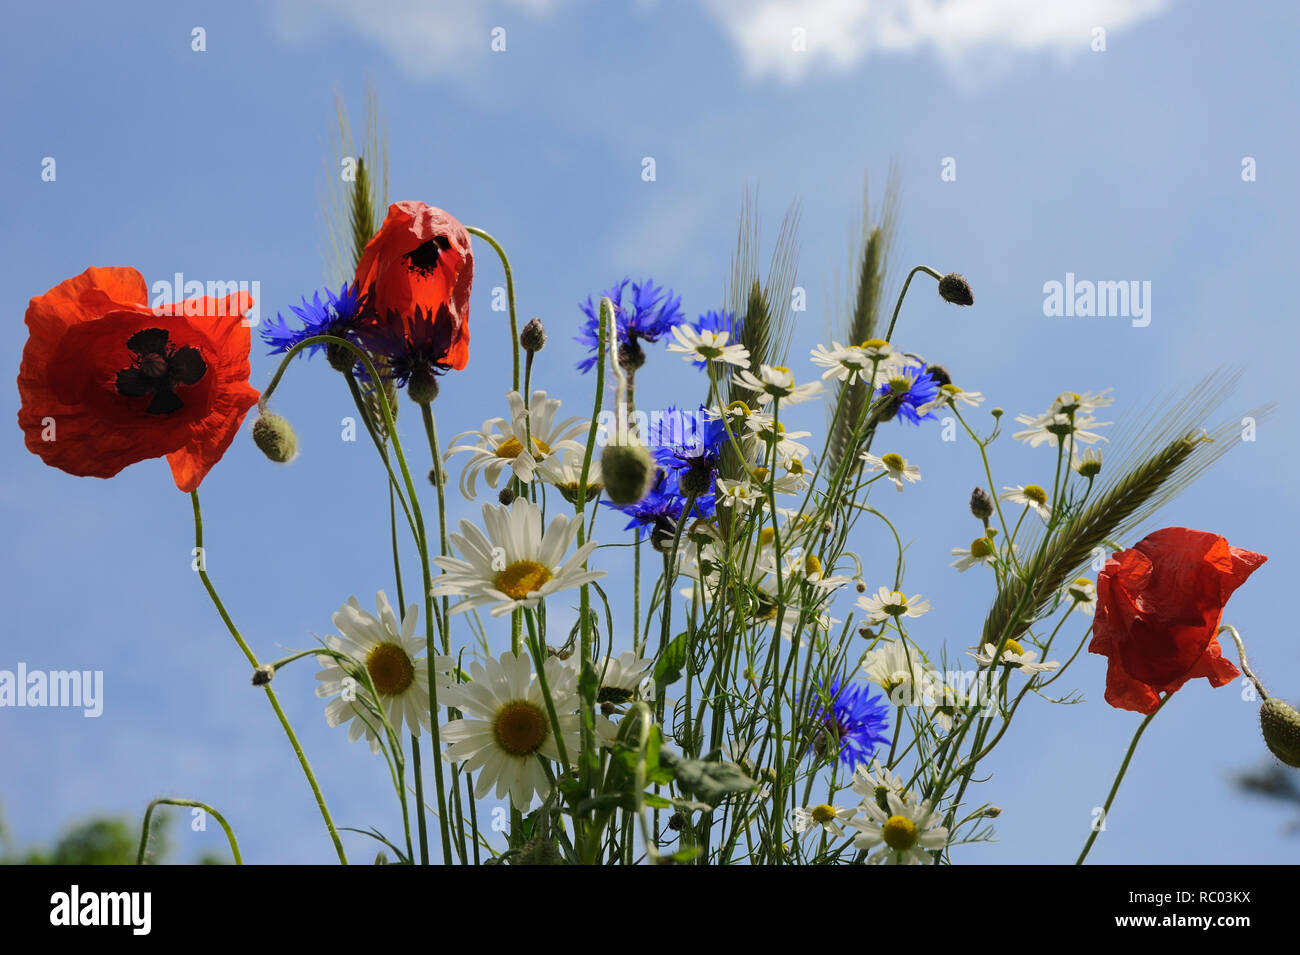 Blumenwiese mit Mohnblumen, Kornblumen und Margeriten Stock Photo